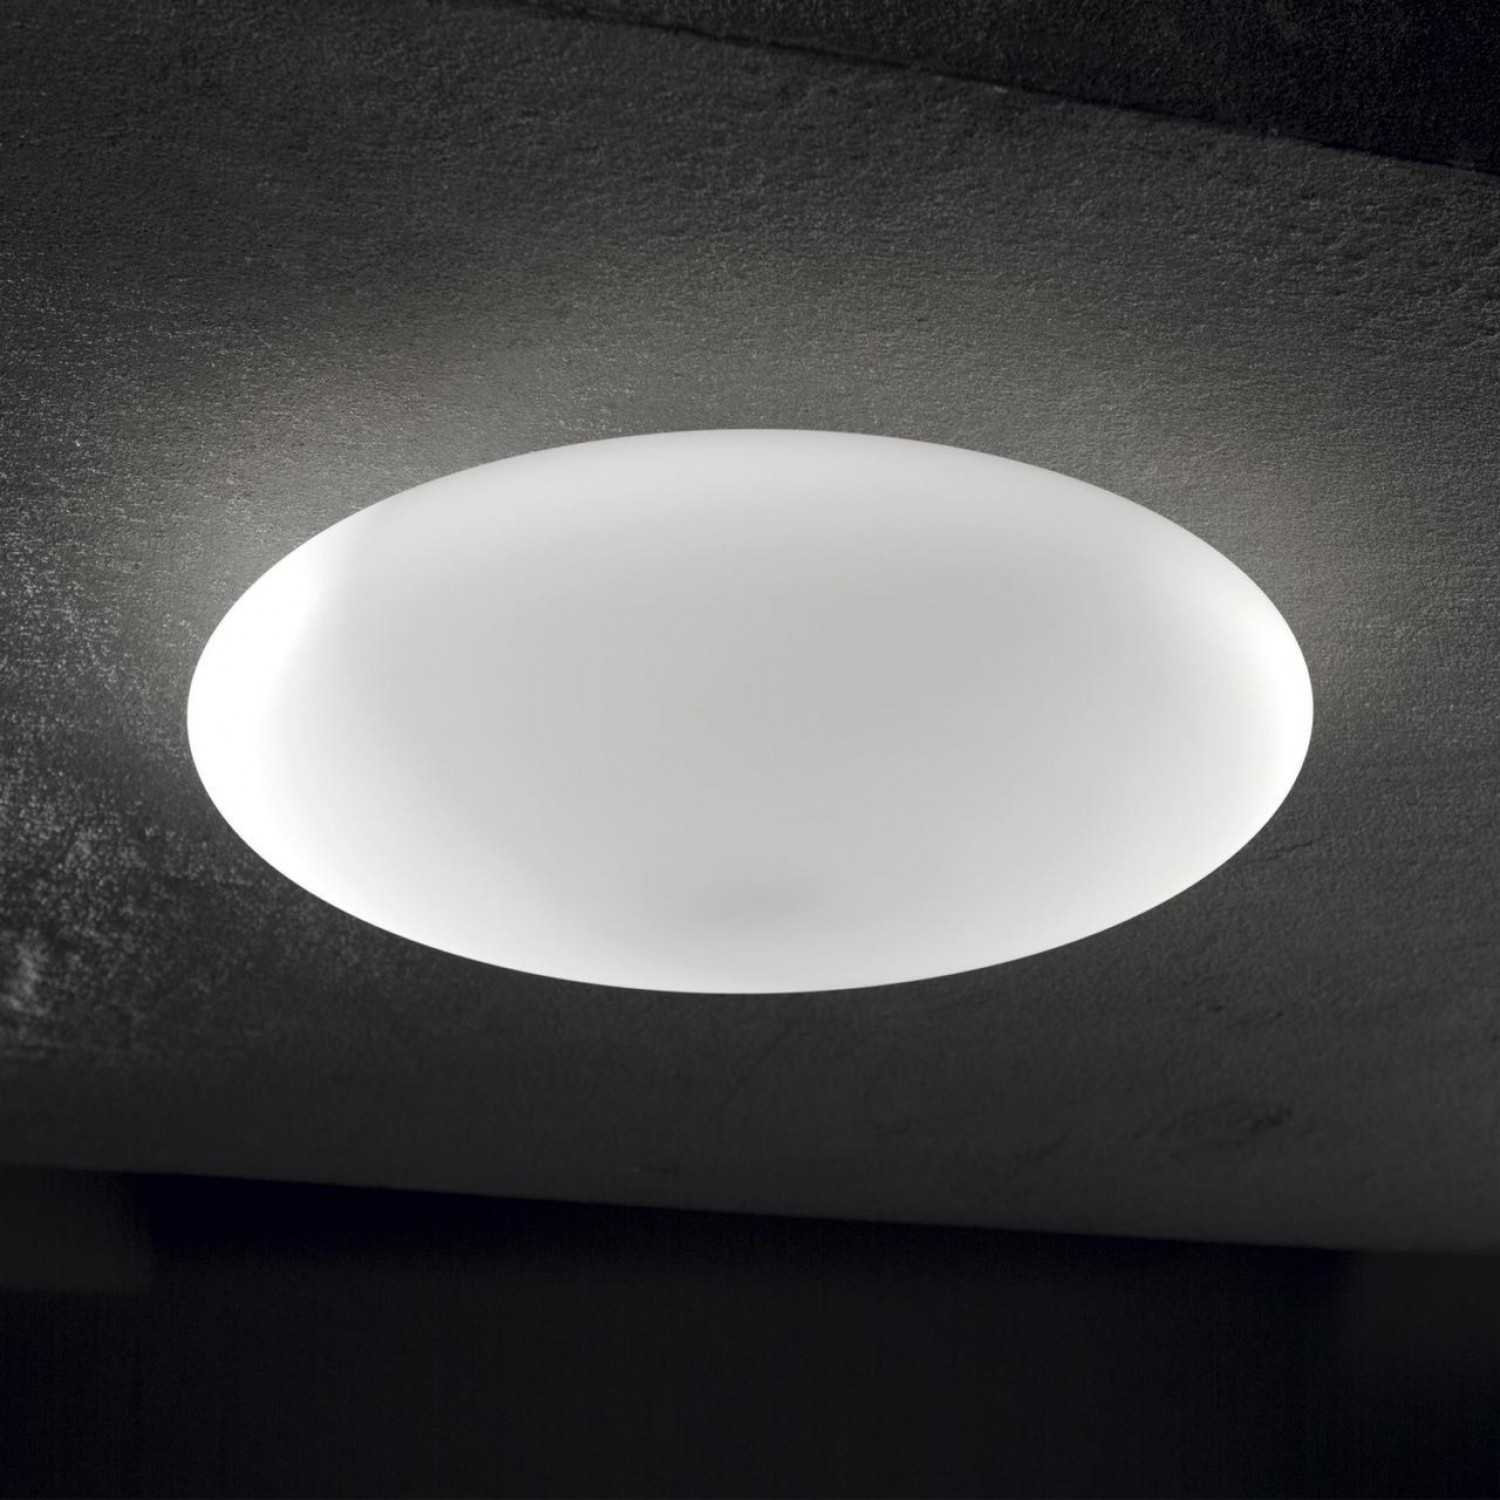 Потолочный светильник Ideal Lux SMARTIES PL1 D33 TRASPARENTE 035543